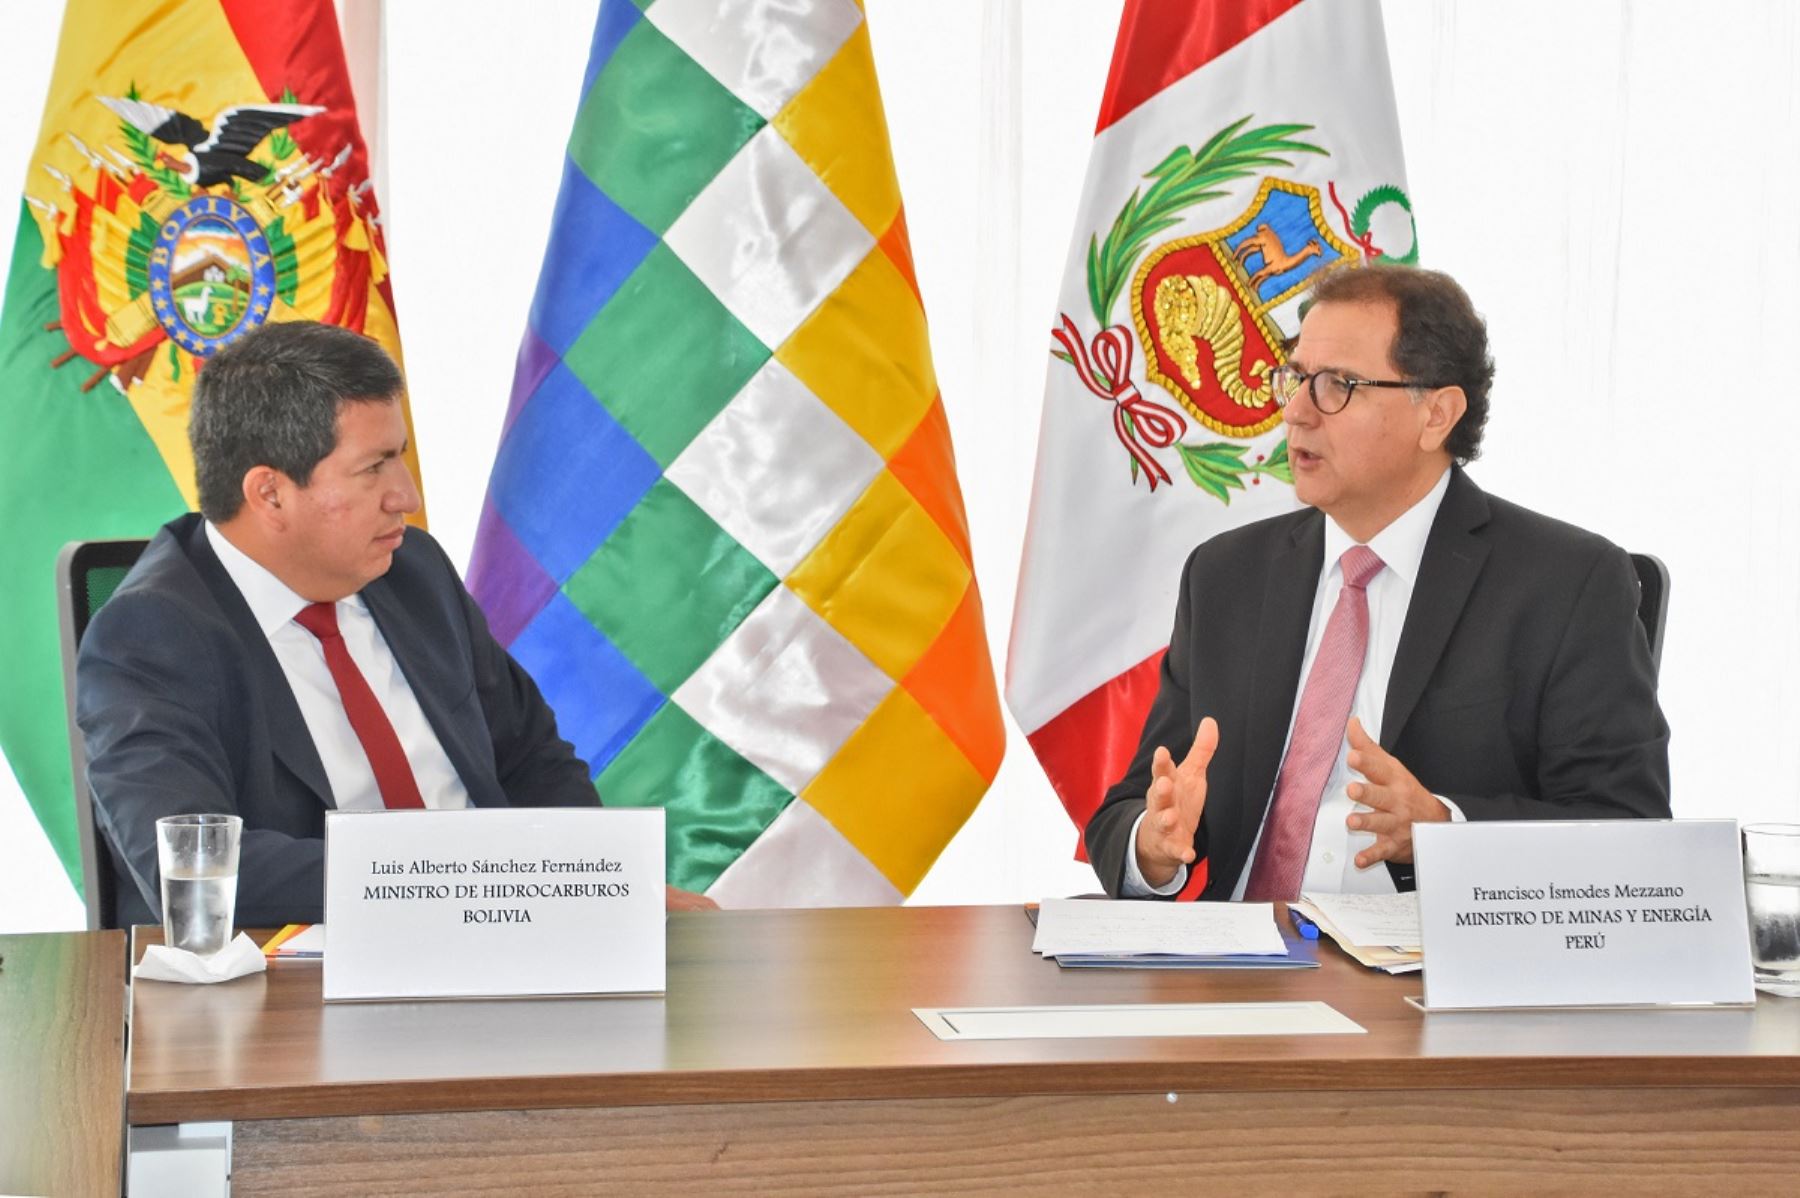 Ministros de Energía de Bolivia y Perú, Luis Alberto Sánchez y Francisco Ísmodes Mezzano, respectivamente en Santa Cruz de la Sierra, Bolivia. Foto: Cortesía.